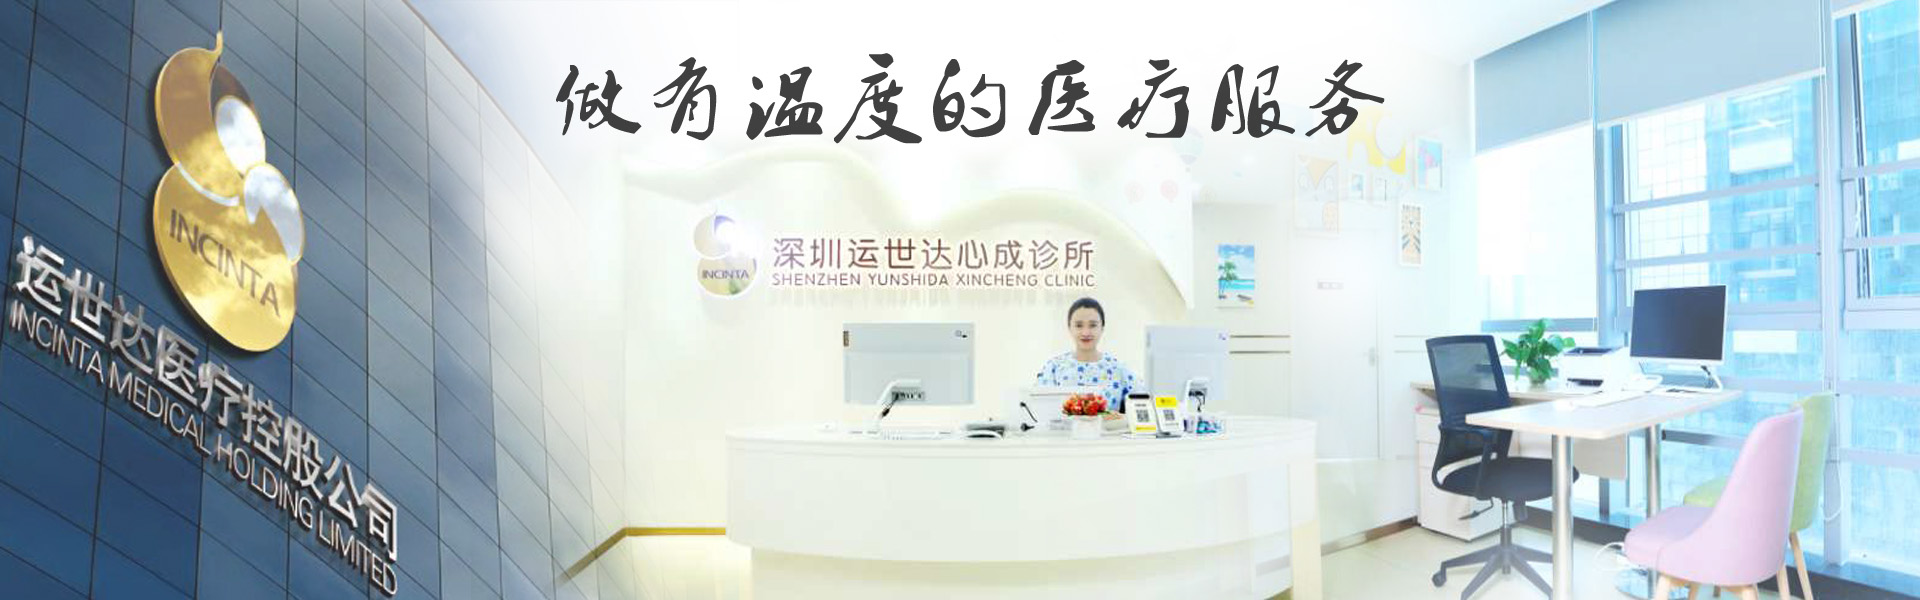 深圳运世达心成诊所 - 做有温度的医疗服务 医德双馨  人格至上